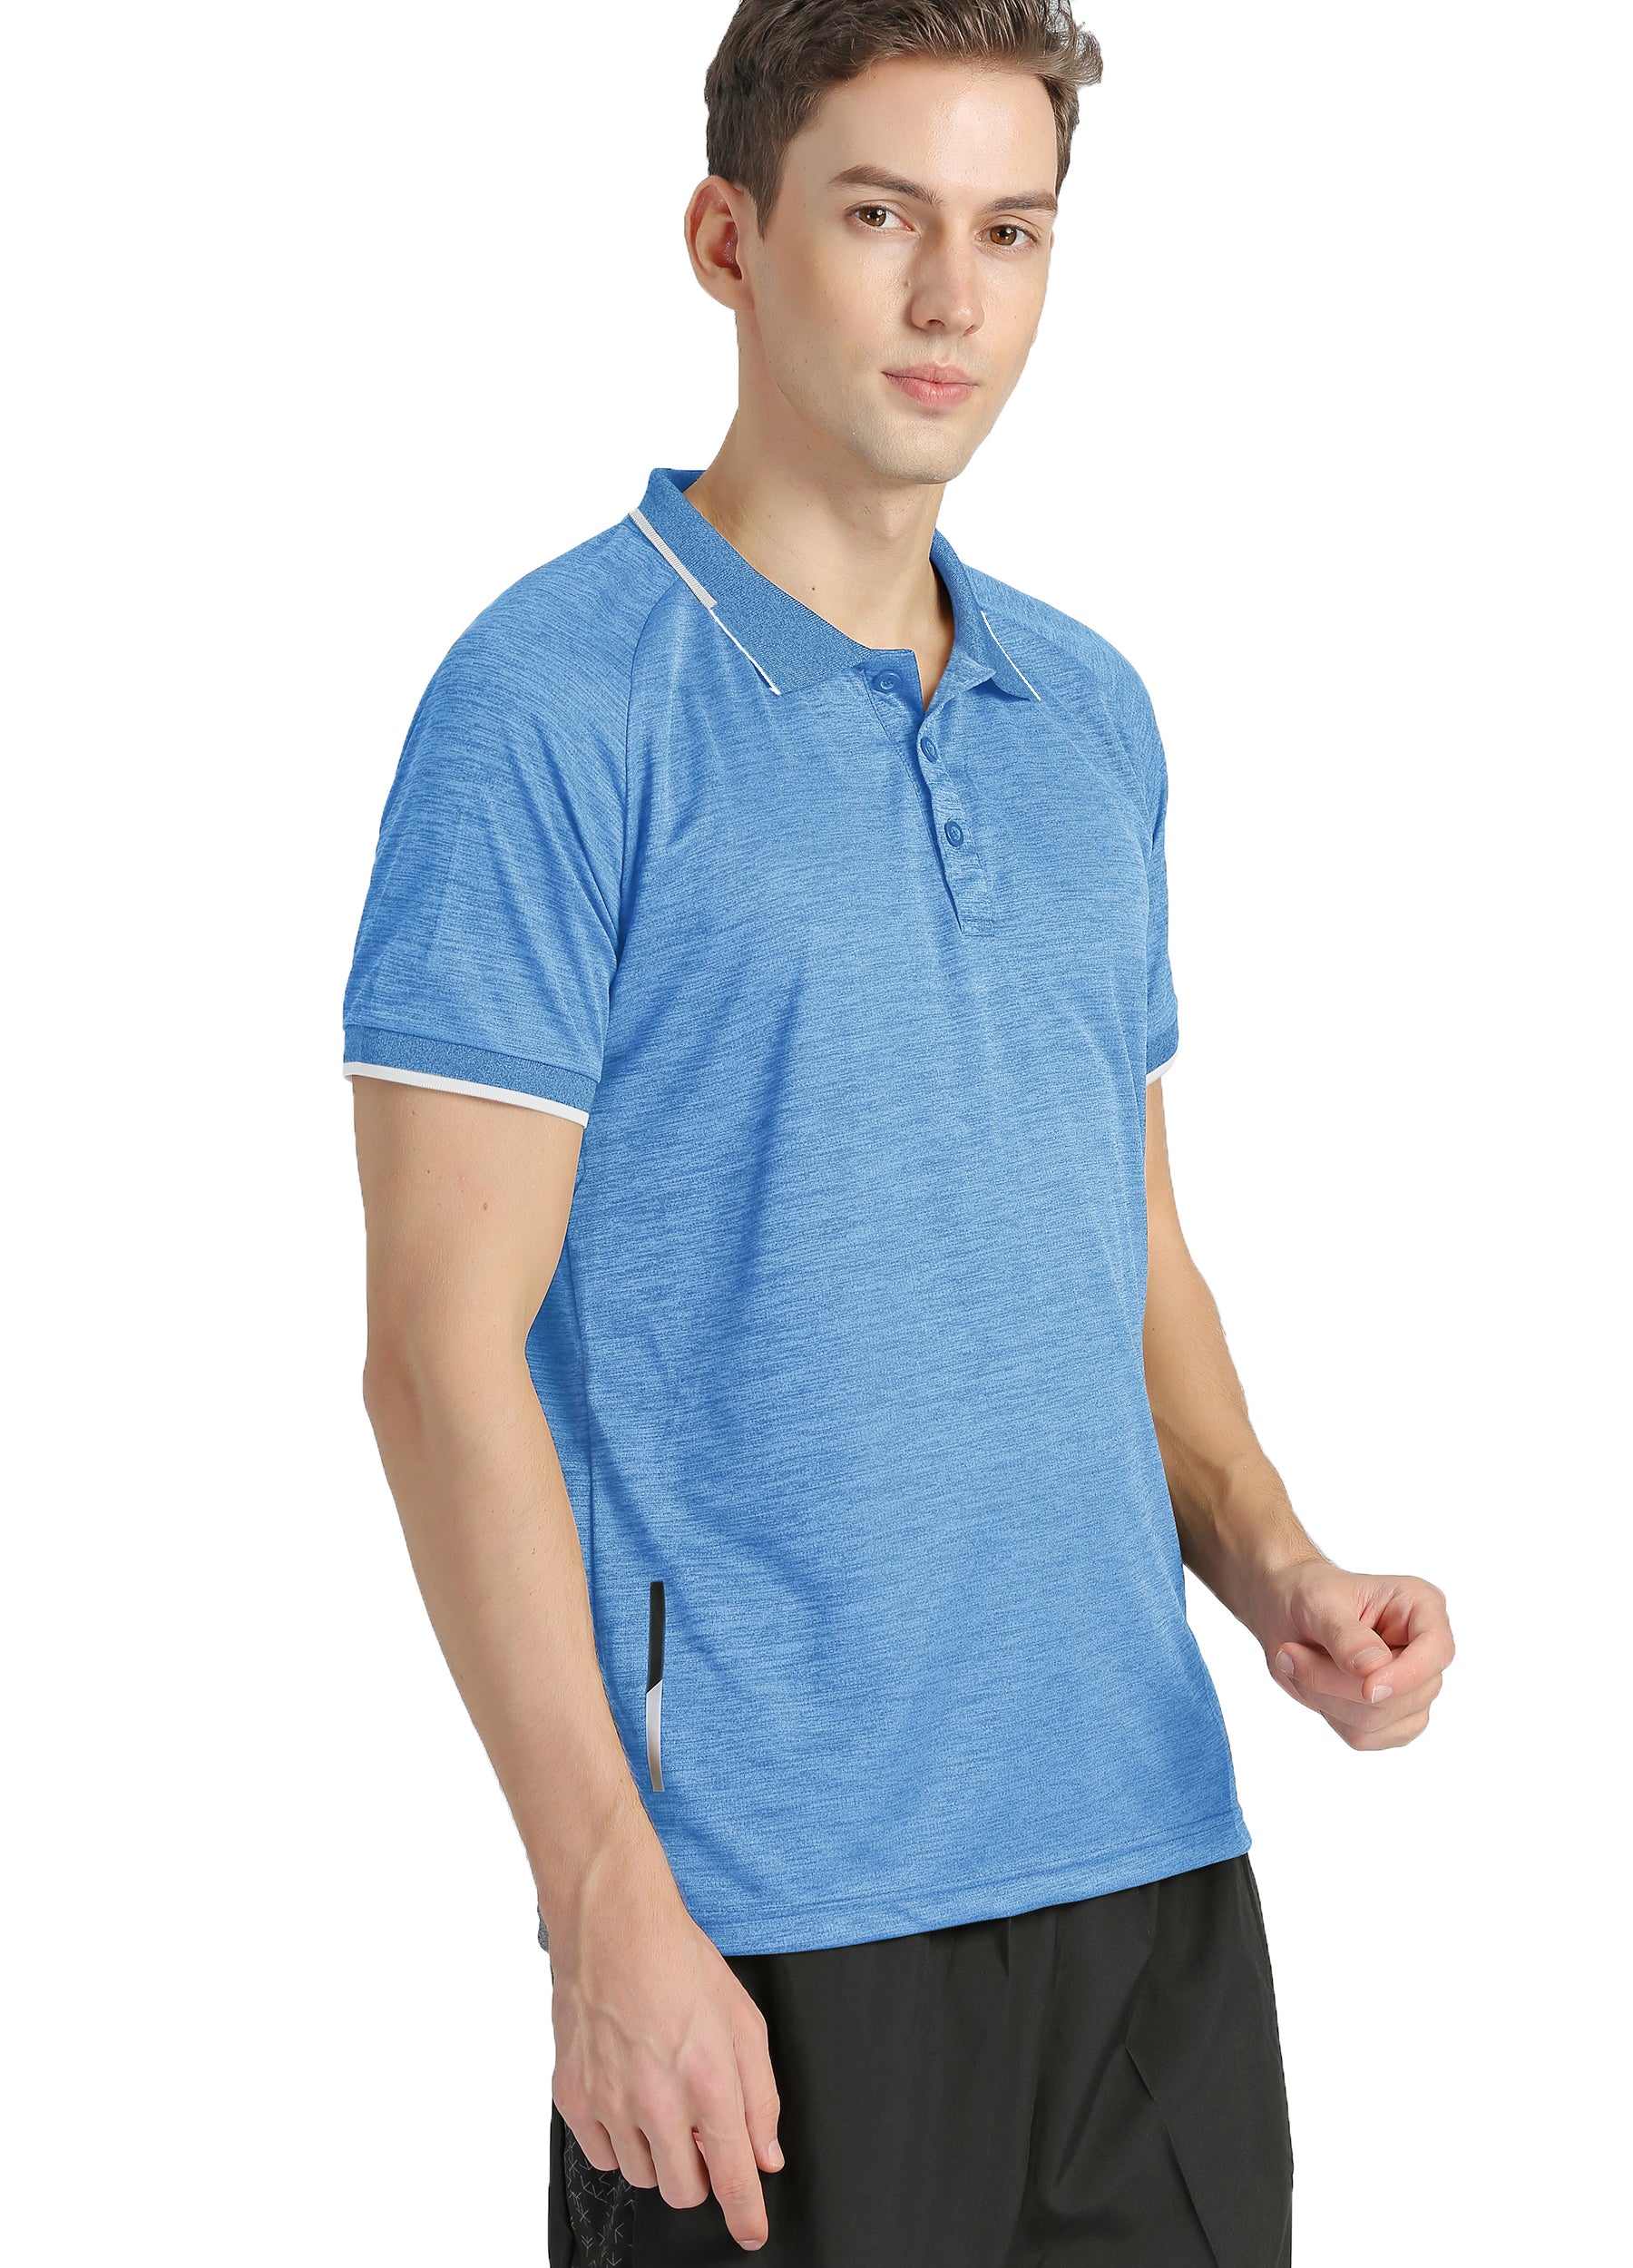 4POSE Men's Summer Quick Dry Stretch Polo Shirt-Light blue